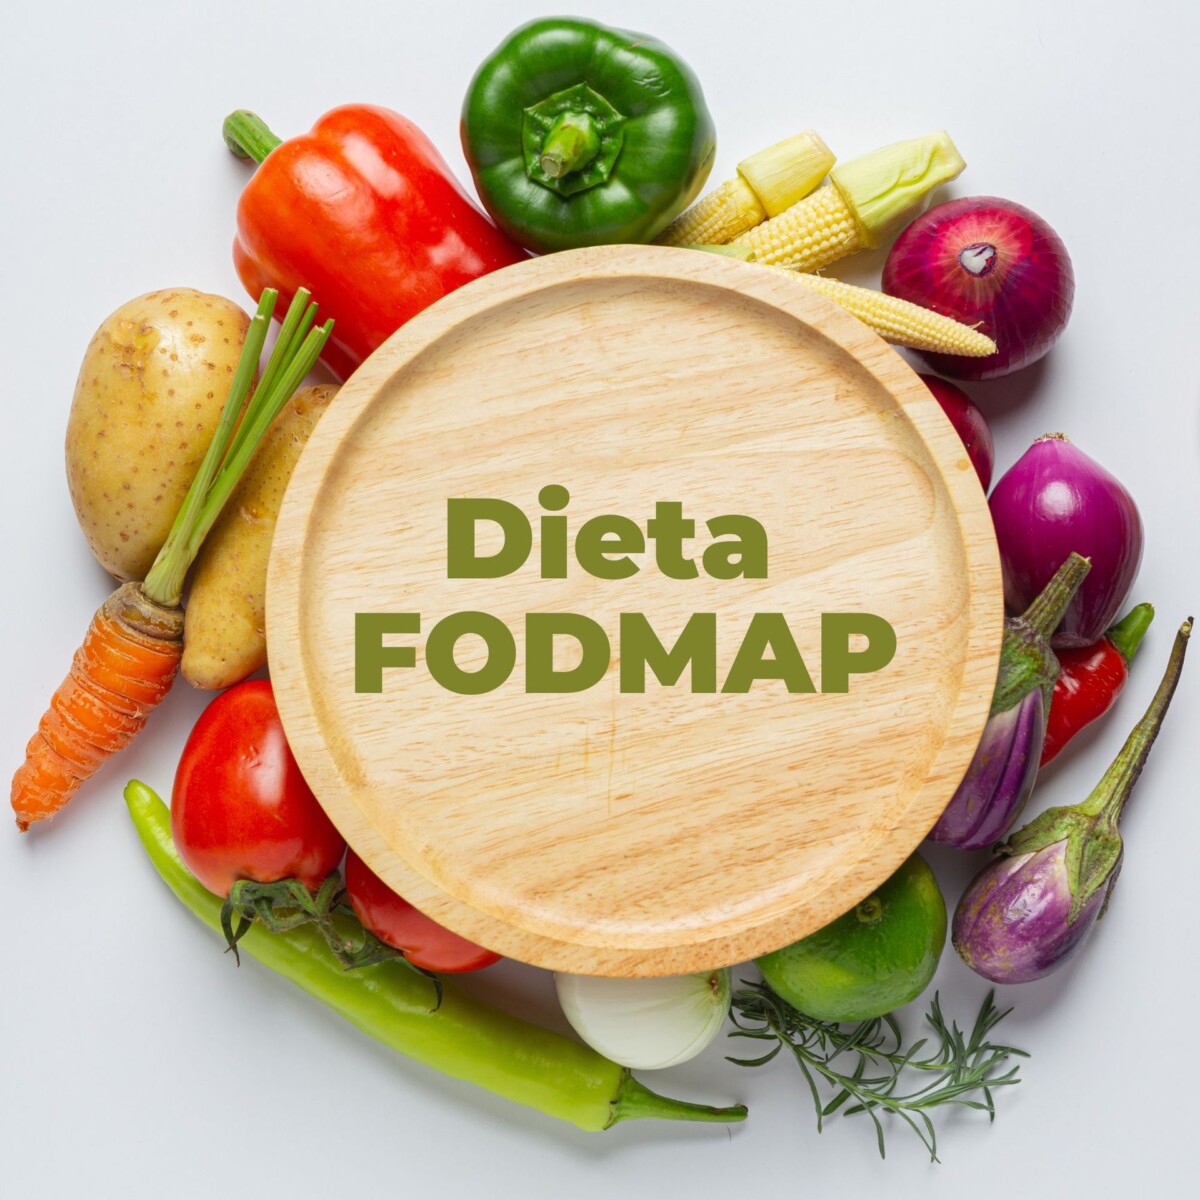 Dieta FODMAP per colon irritabile: funziona davvero?